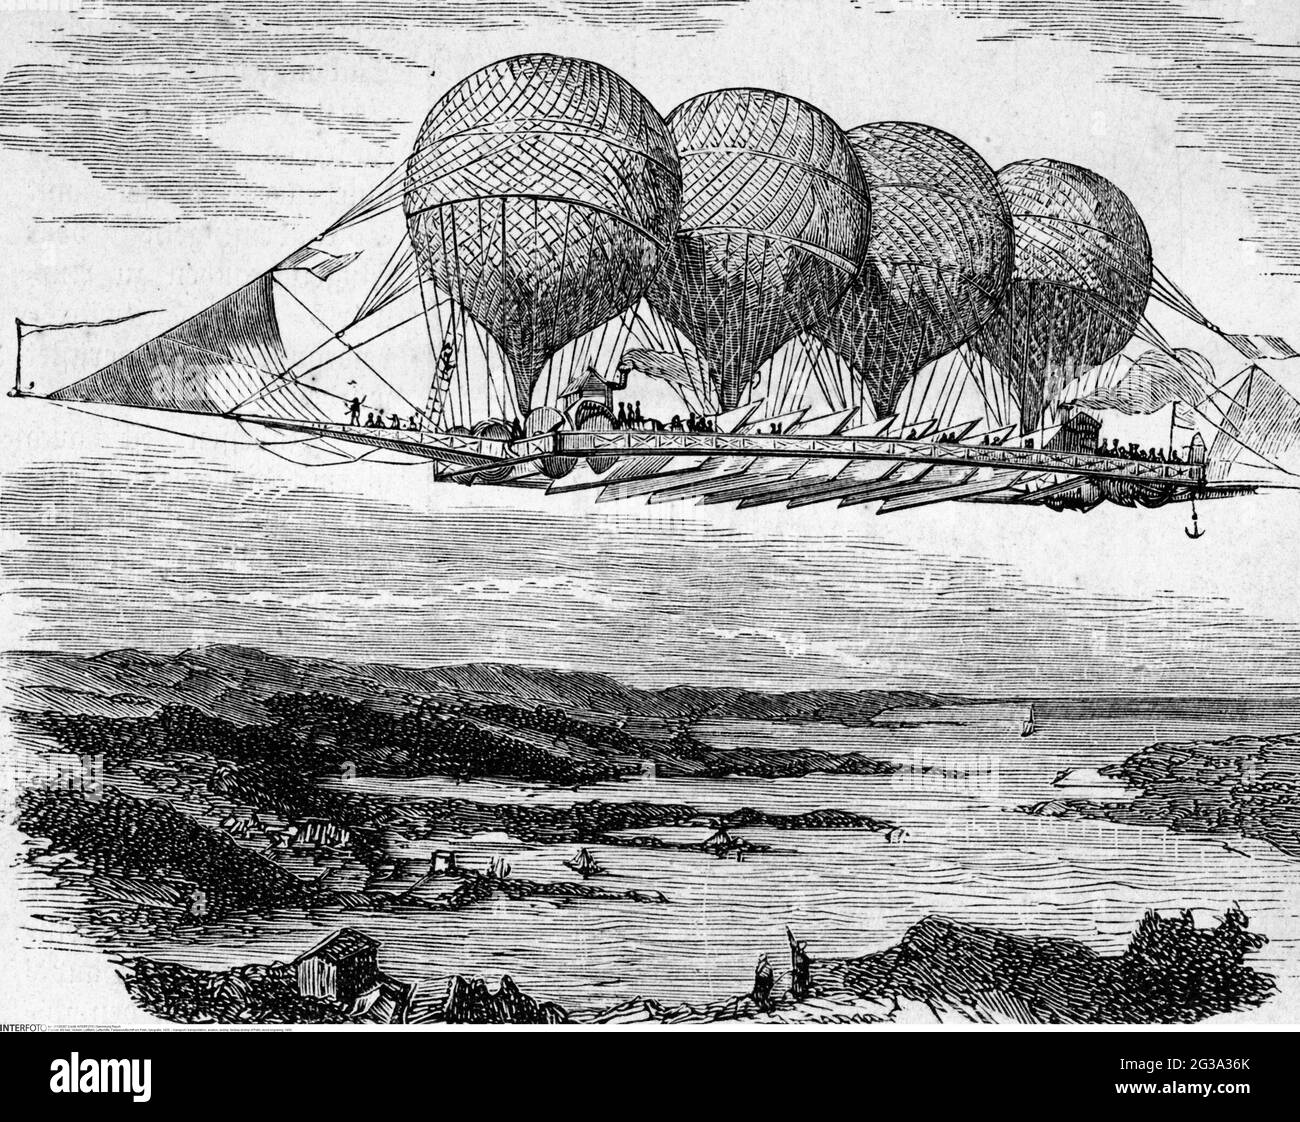 Transport / transport, aviation, airship, fantasy Airship de Petin, gravure en bois, 1850, DROITS-SUPPLÉMENTAIRES-AUTORISATION-INFO-NON-DISPONIBLE Banque D'Images